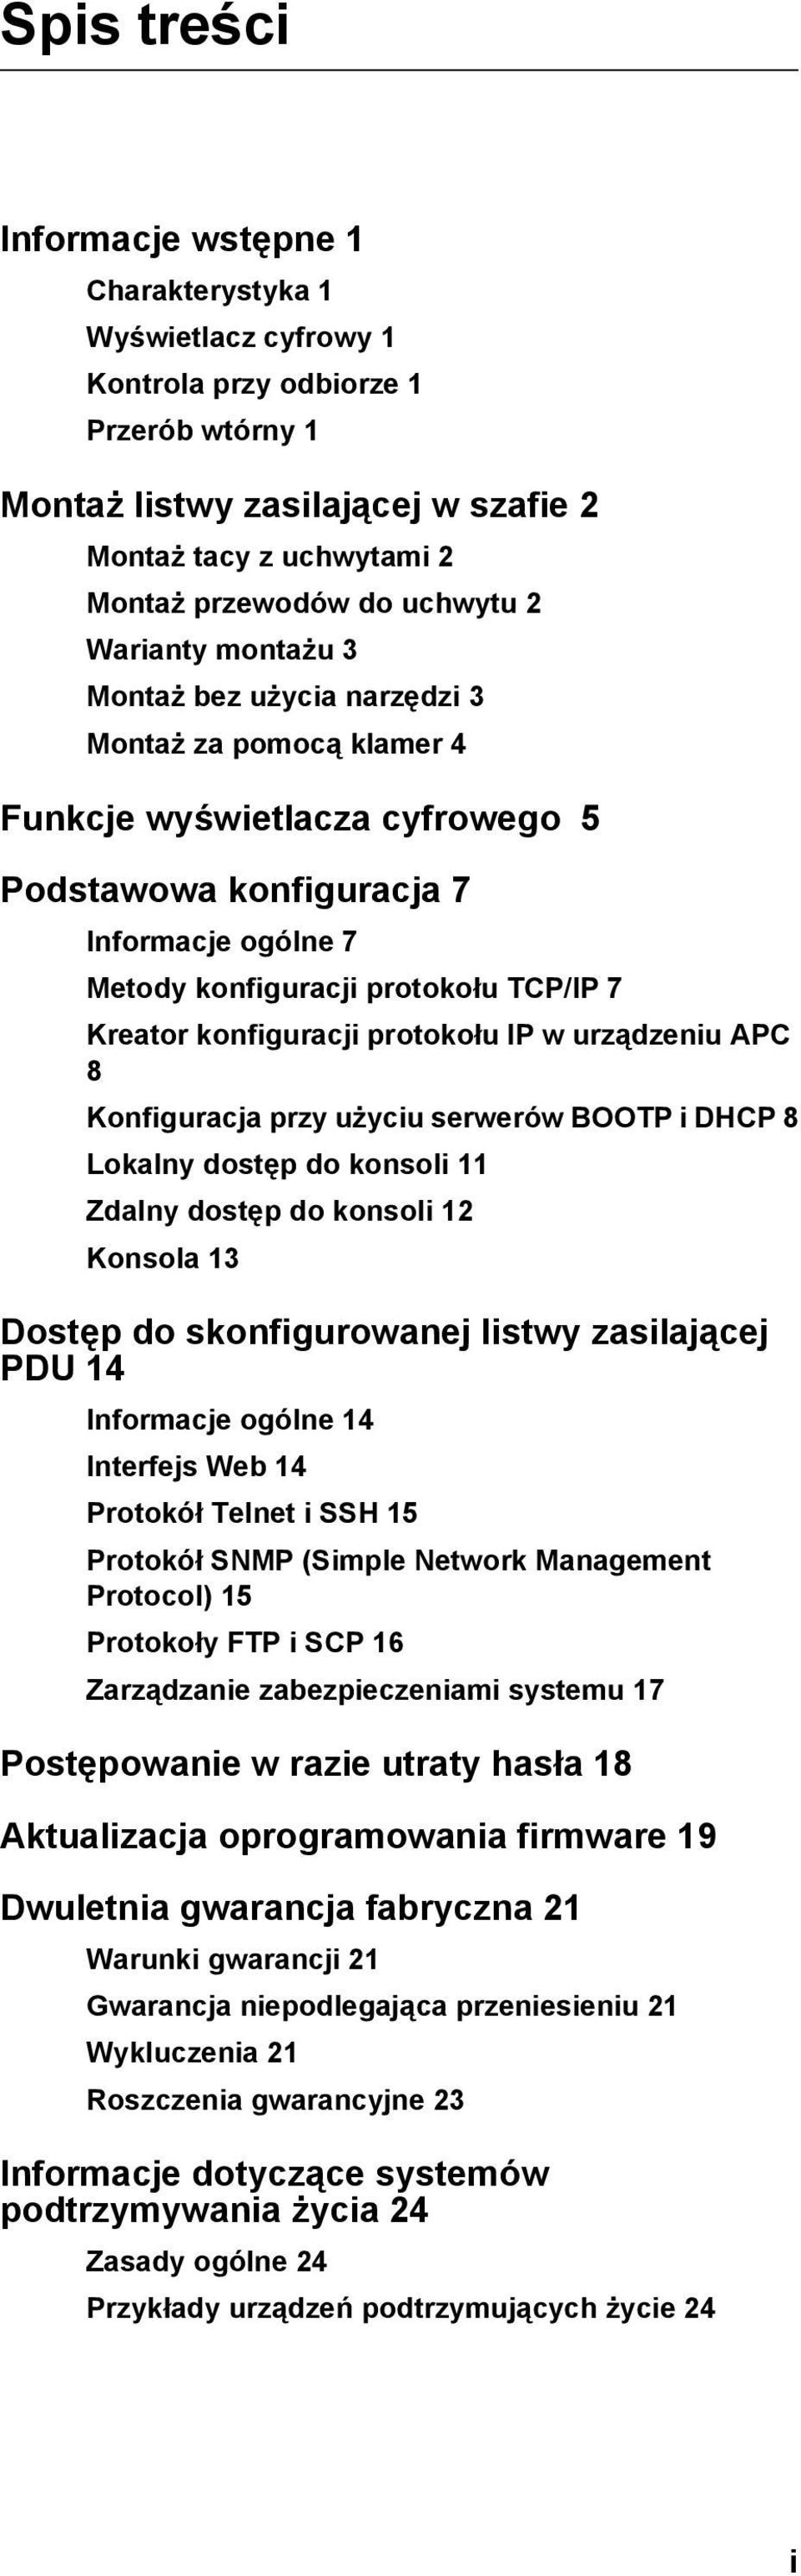 7 Kreator konfiguracji protokołu IP w urządzeniu APC 8 Konfiguracja przy użyciu serwerów BOOTP i DHCP 8 Lokalny dostęp do konsoli 11 Zdalny dostęp do konsoli 12 Konsola 13 Dostęp do skonfigurowanej